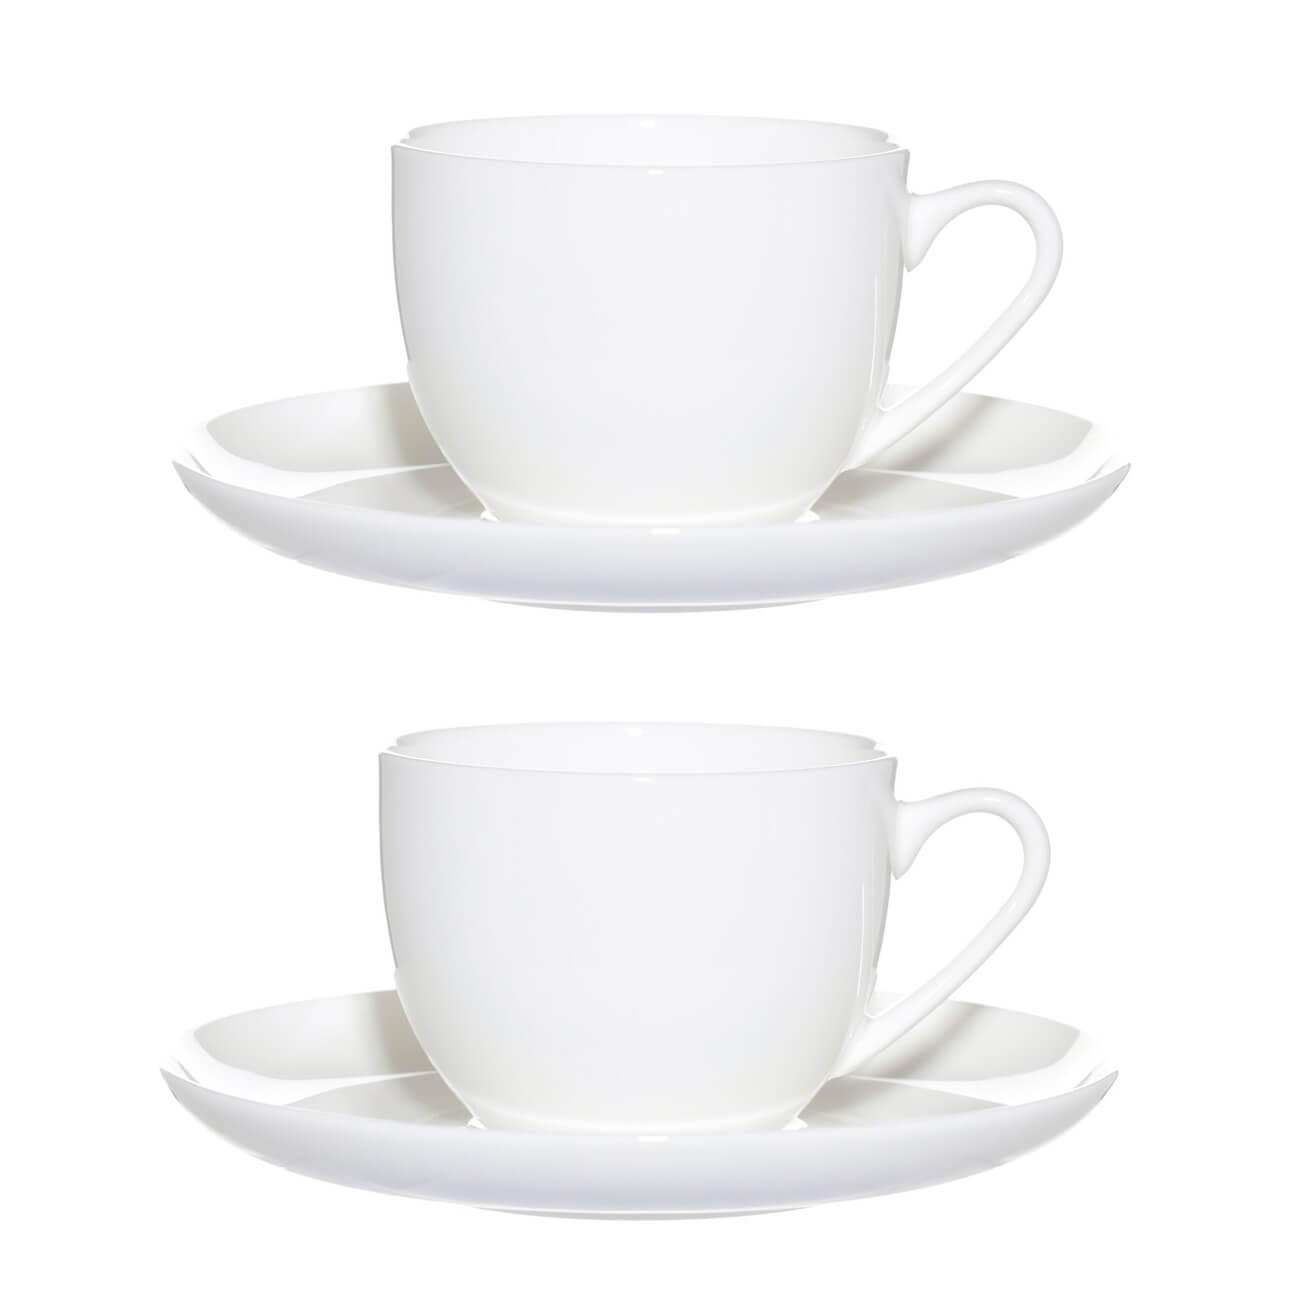 пара чайная 2 перс 4 пр 250 мл фарфор f белая ideal white Пара чайная, 2 перс, 4 пр, 250 мл, фарфор F, белая, Ideal white